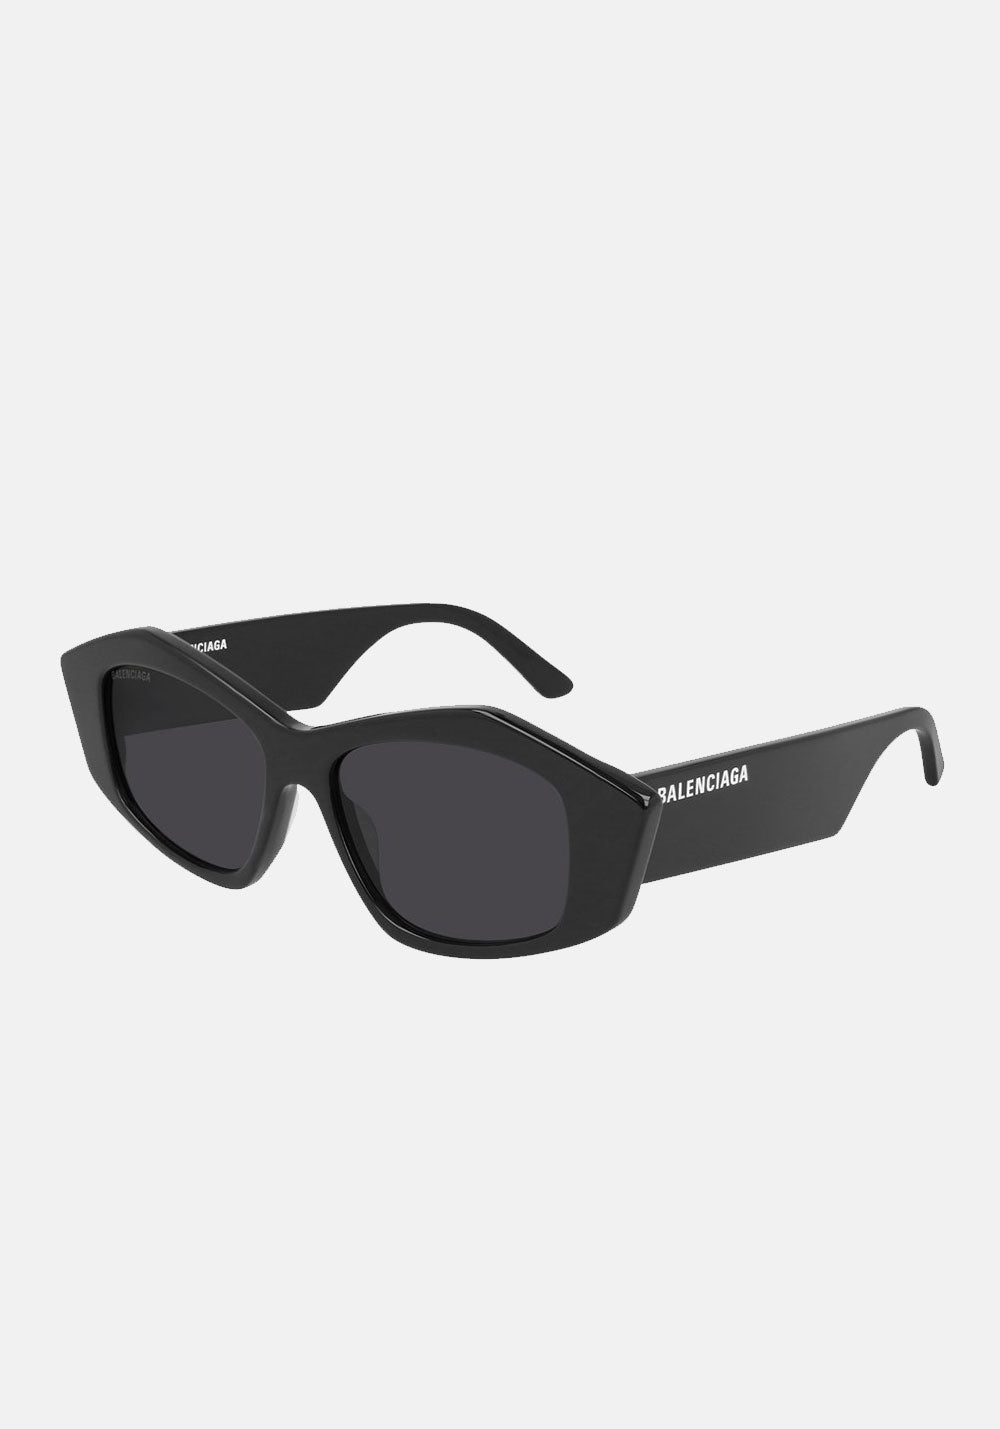 Balenciaga BB0106S001 Sunglasses in Black